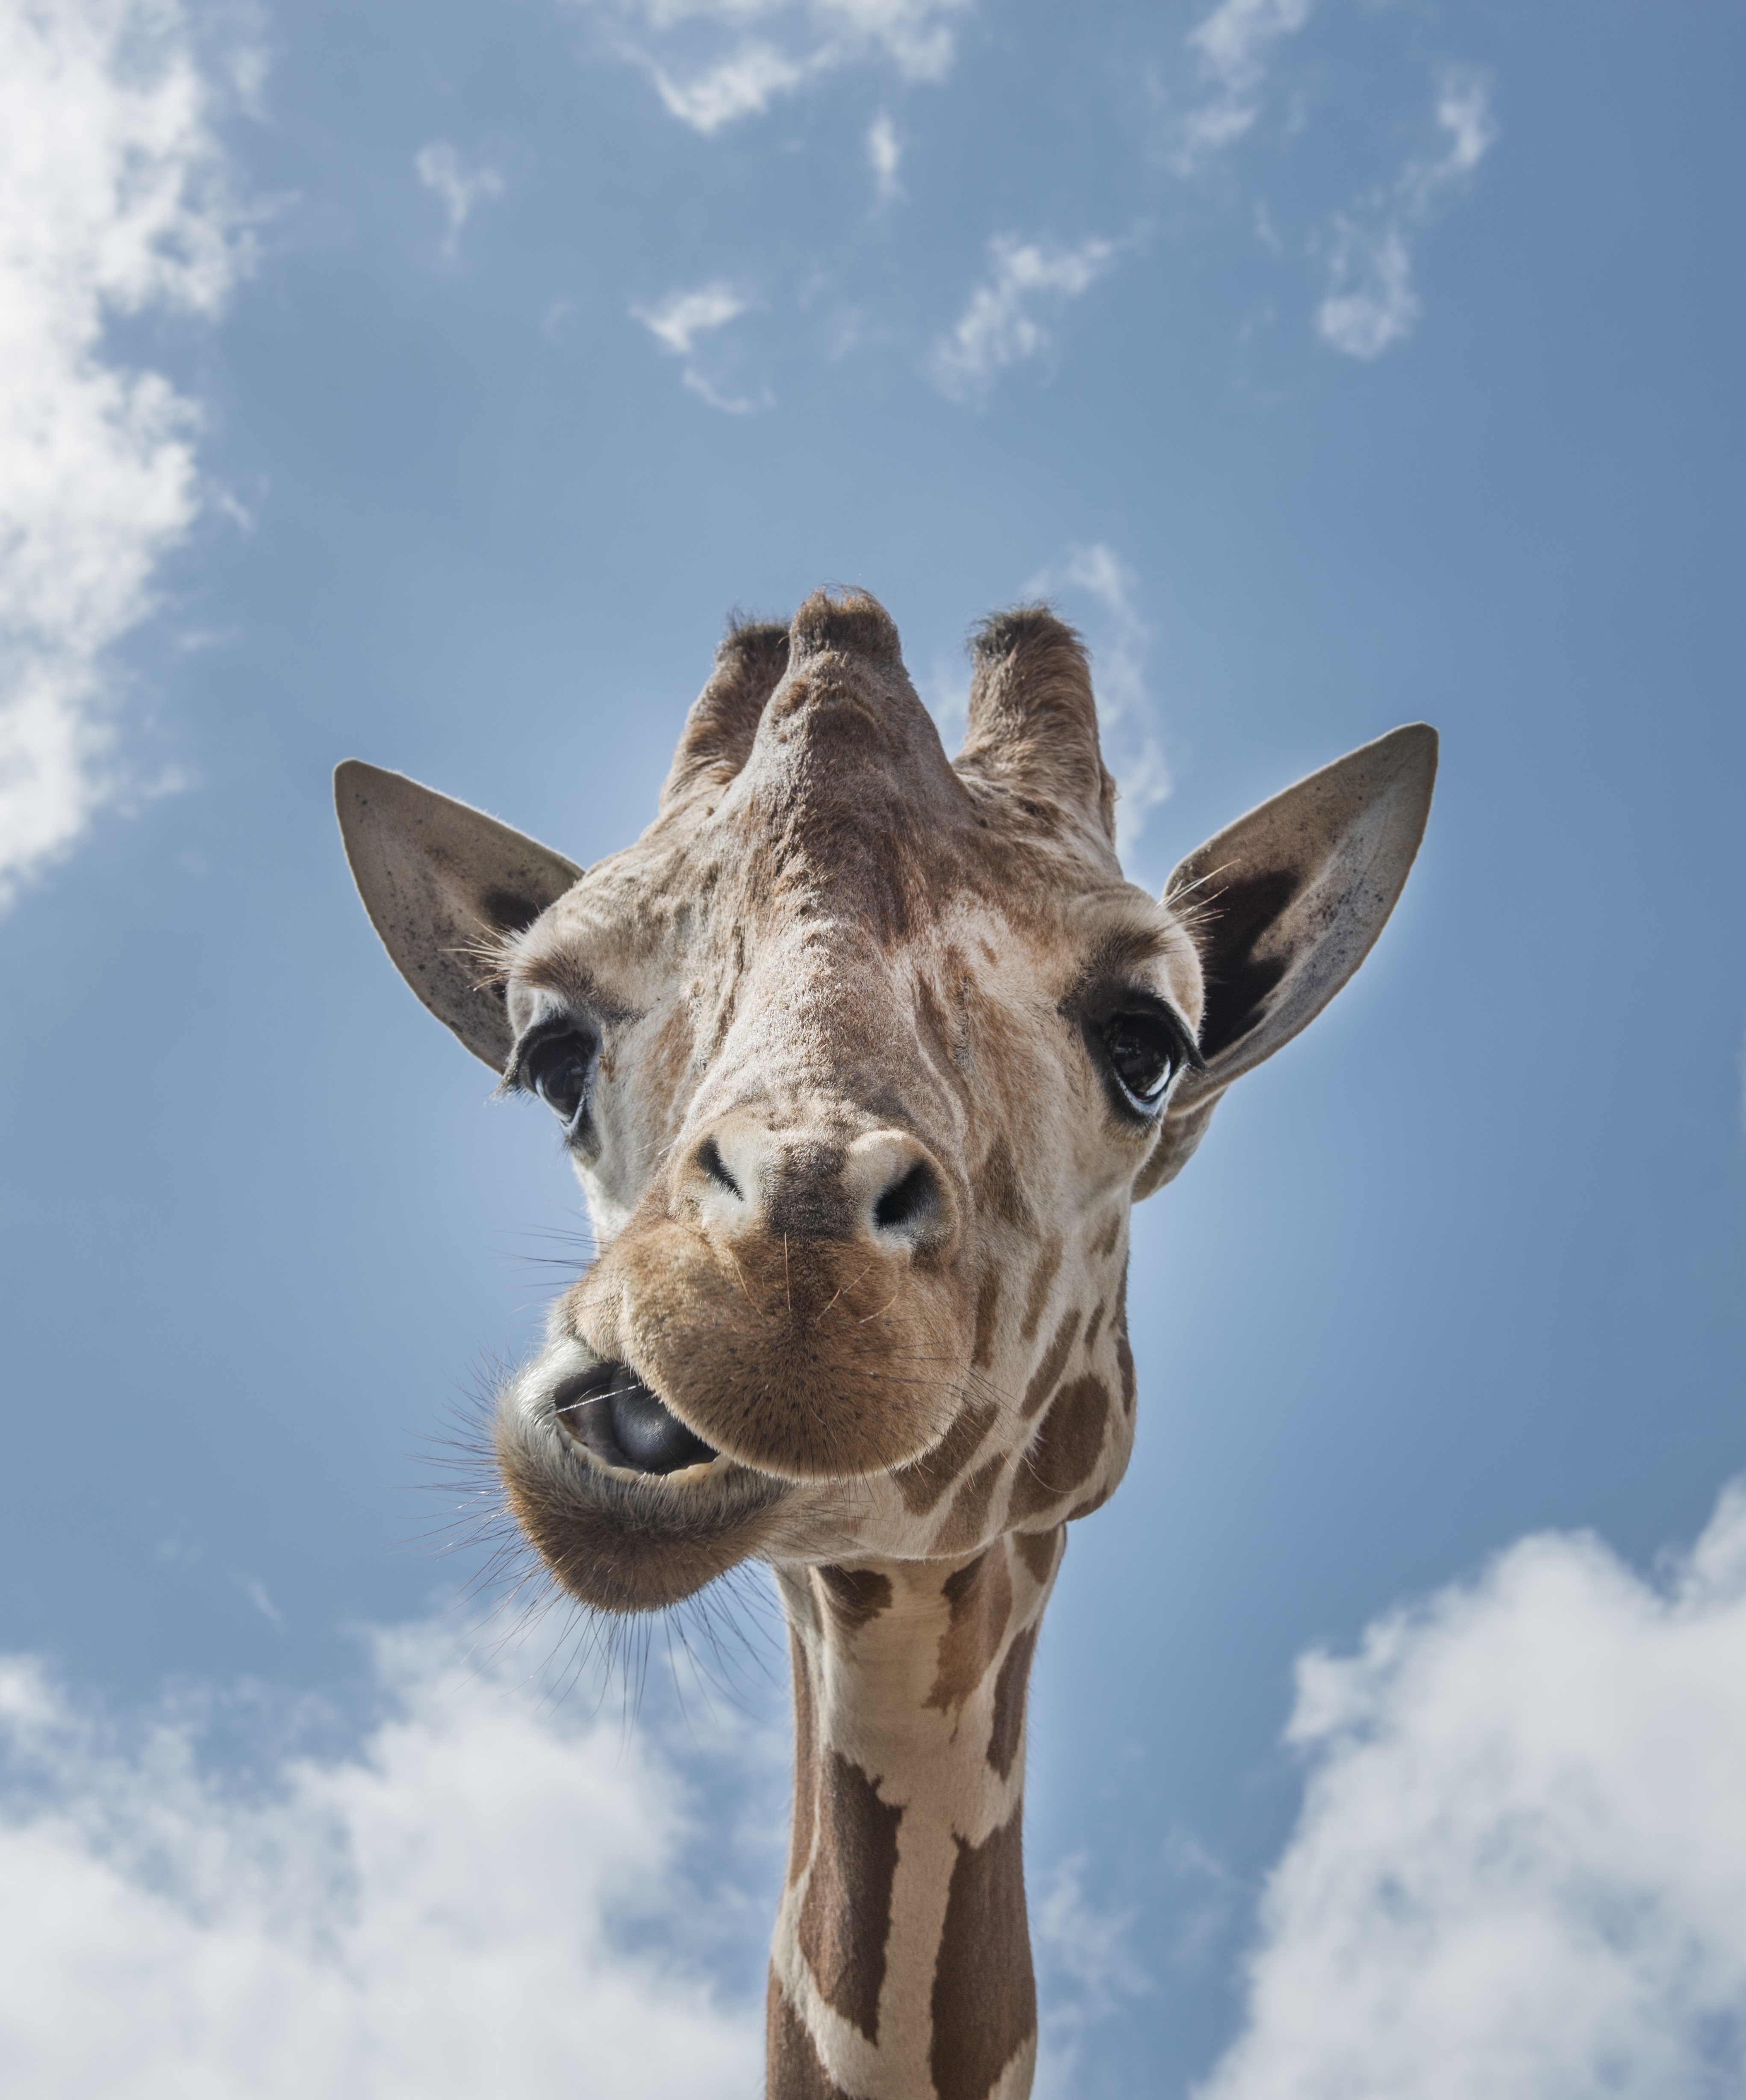 免费照片一张酷酷的长颈鹿脸直视镜头